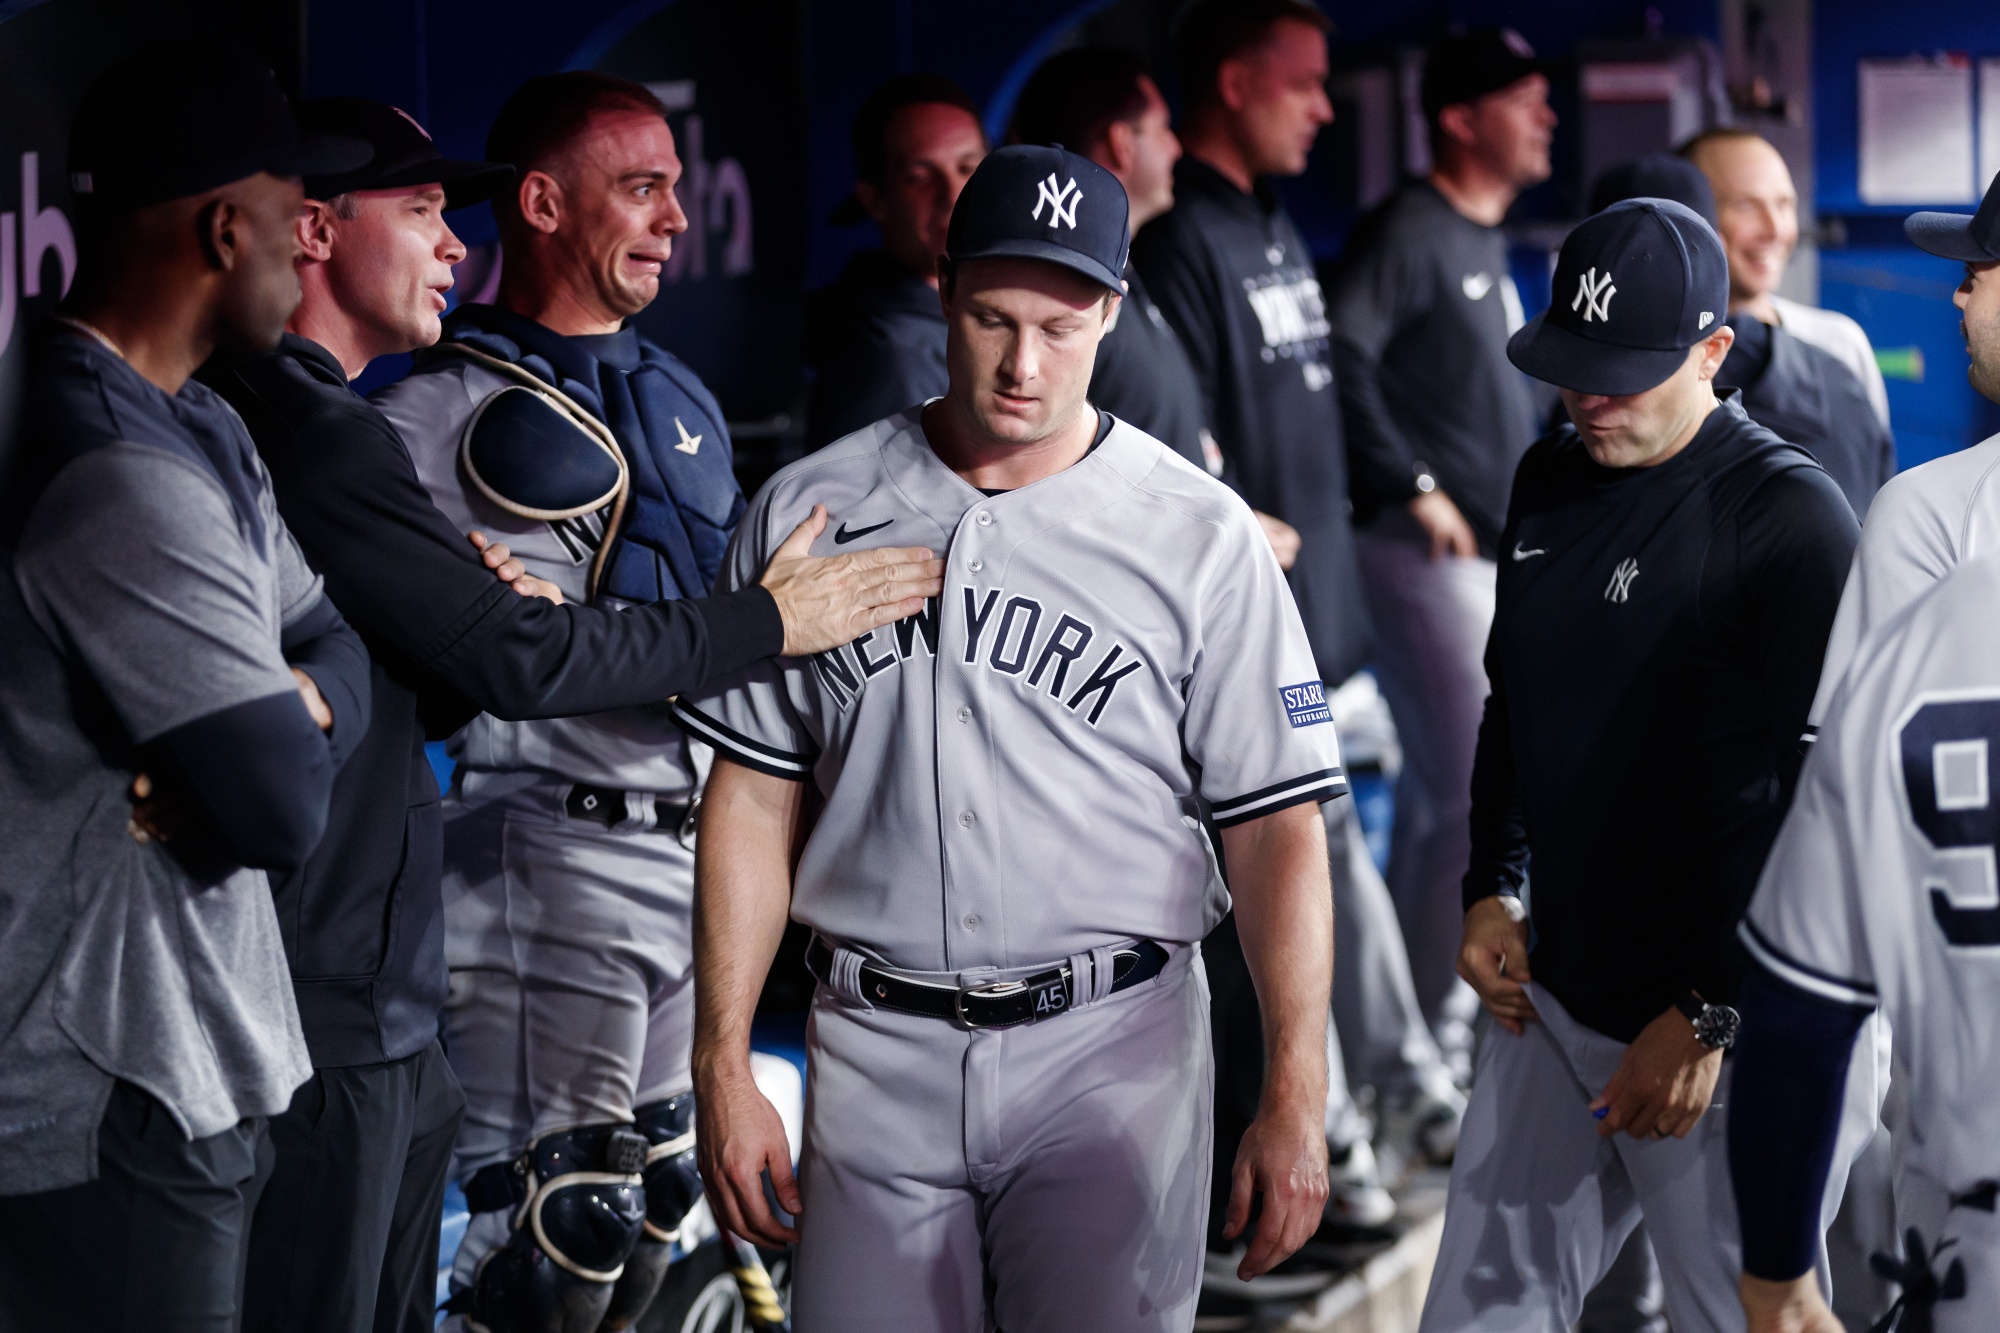 The Yankees' Big Spending Habit Needs an Overhaul - Bloomberg